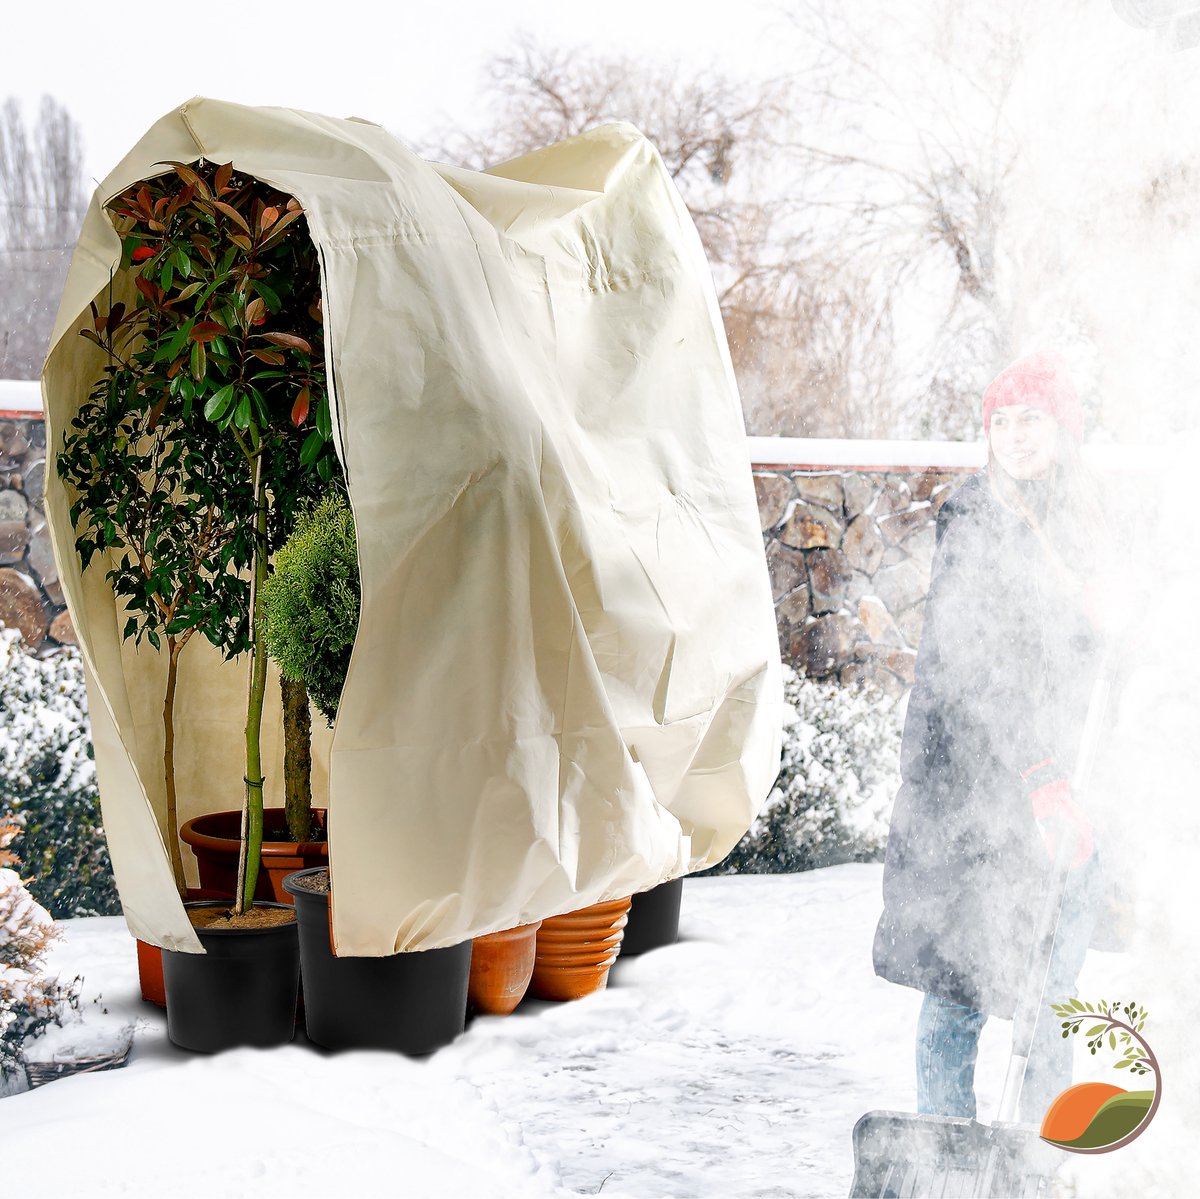 Couverture de protection contre le gel des plantes d'hiver  (240x200cm)couverture Protection contre le gel